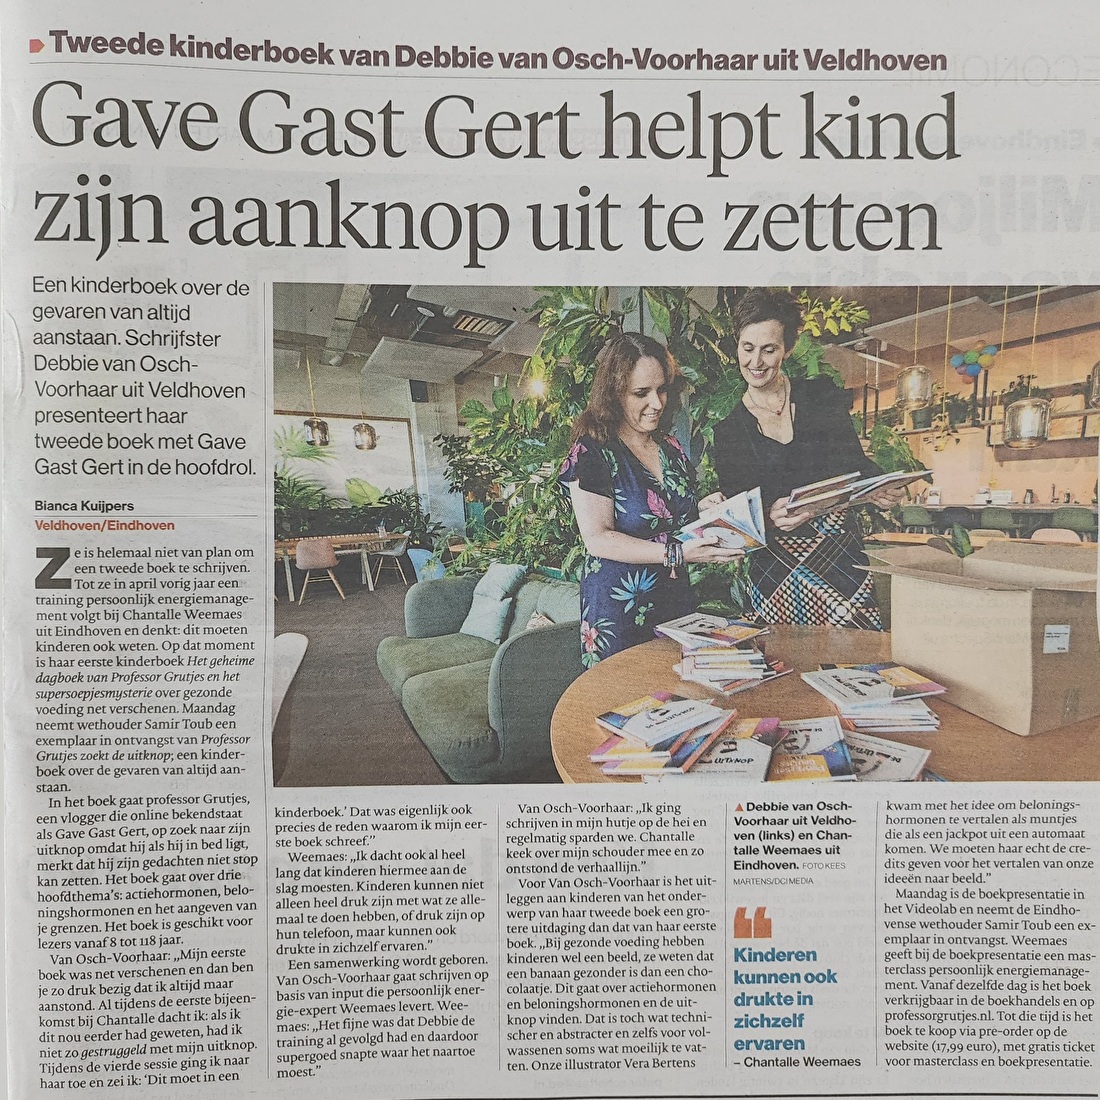 Eindhovens Dagblad Professor Grutjes zoekt de uitknop